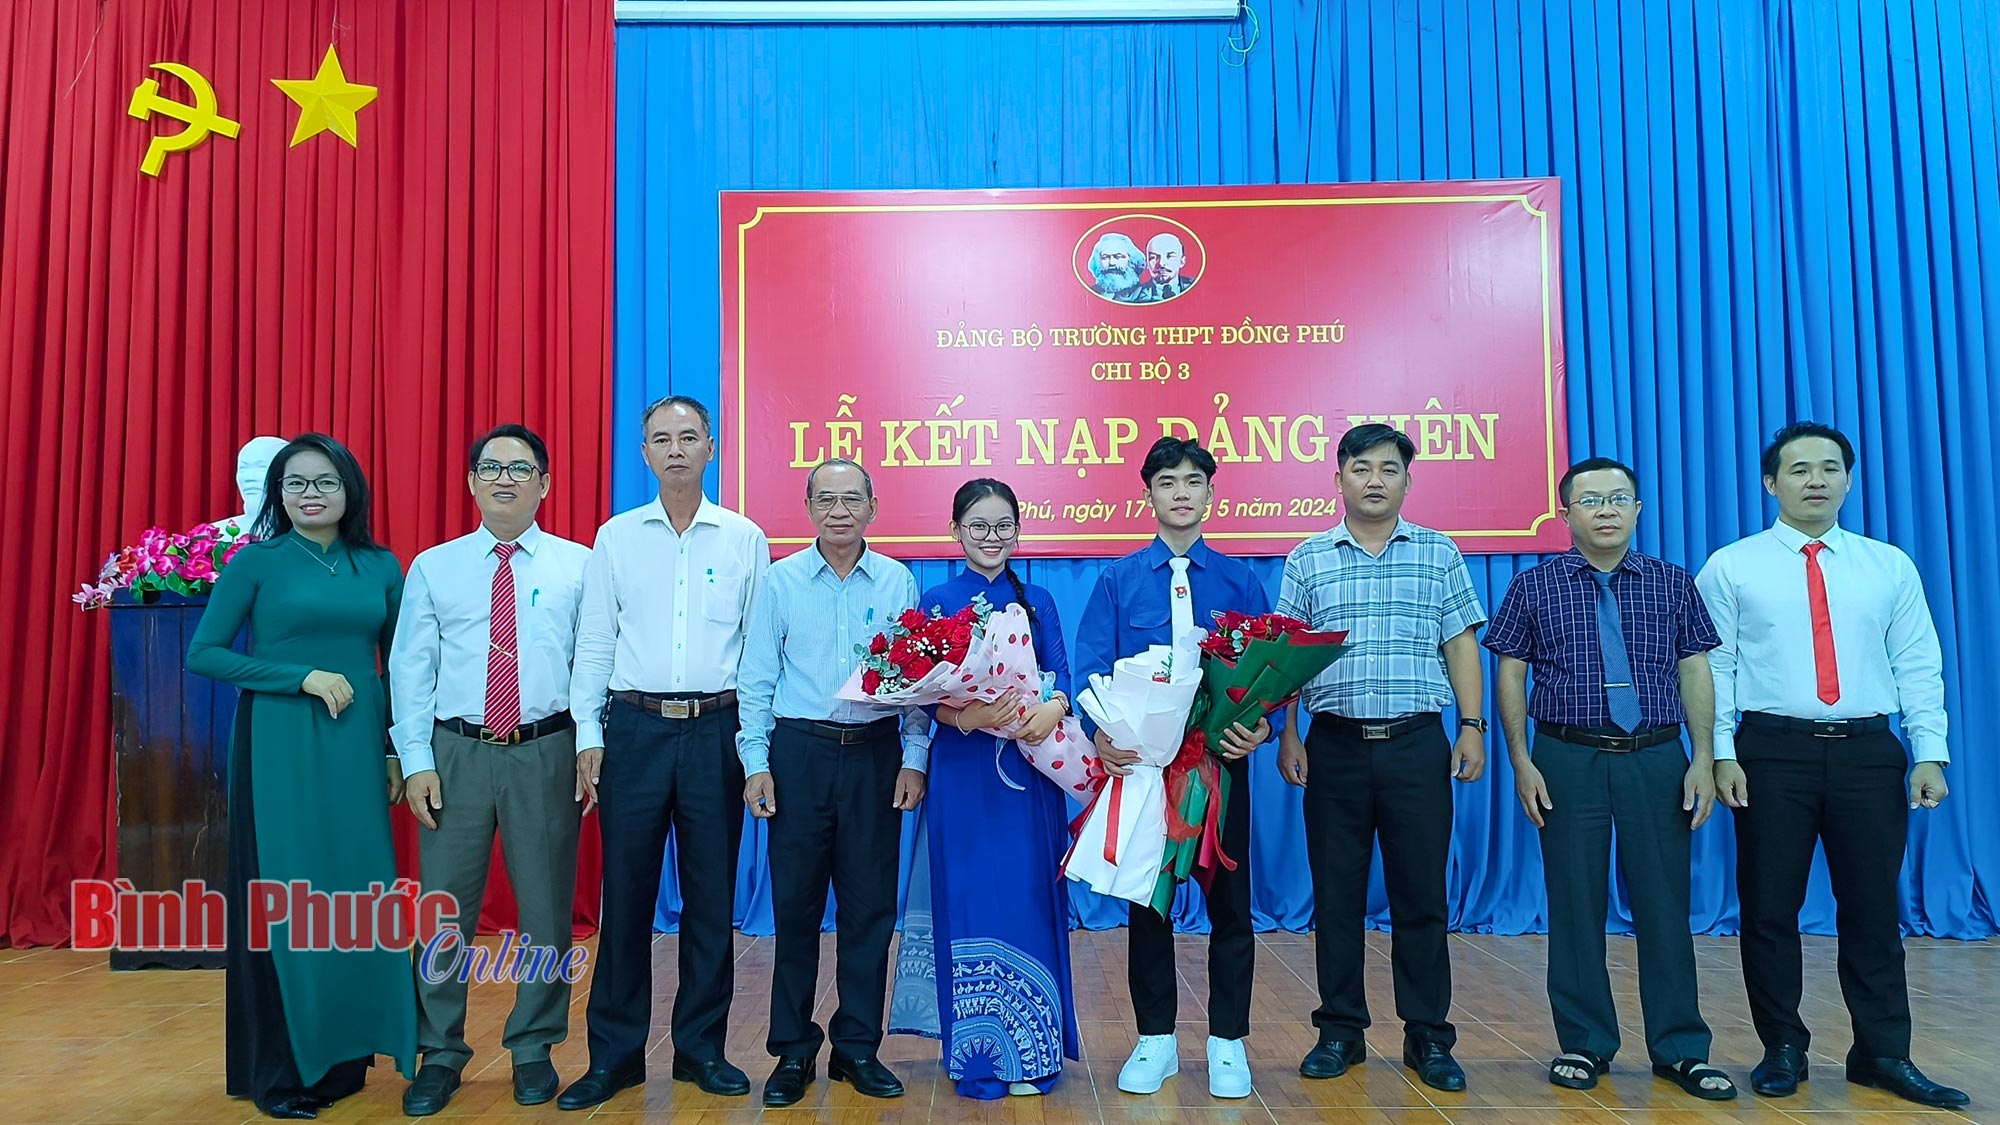 2 học sinh THPT ở Đồng Phú được kết nạp Đảng